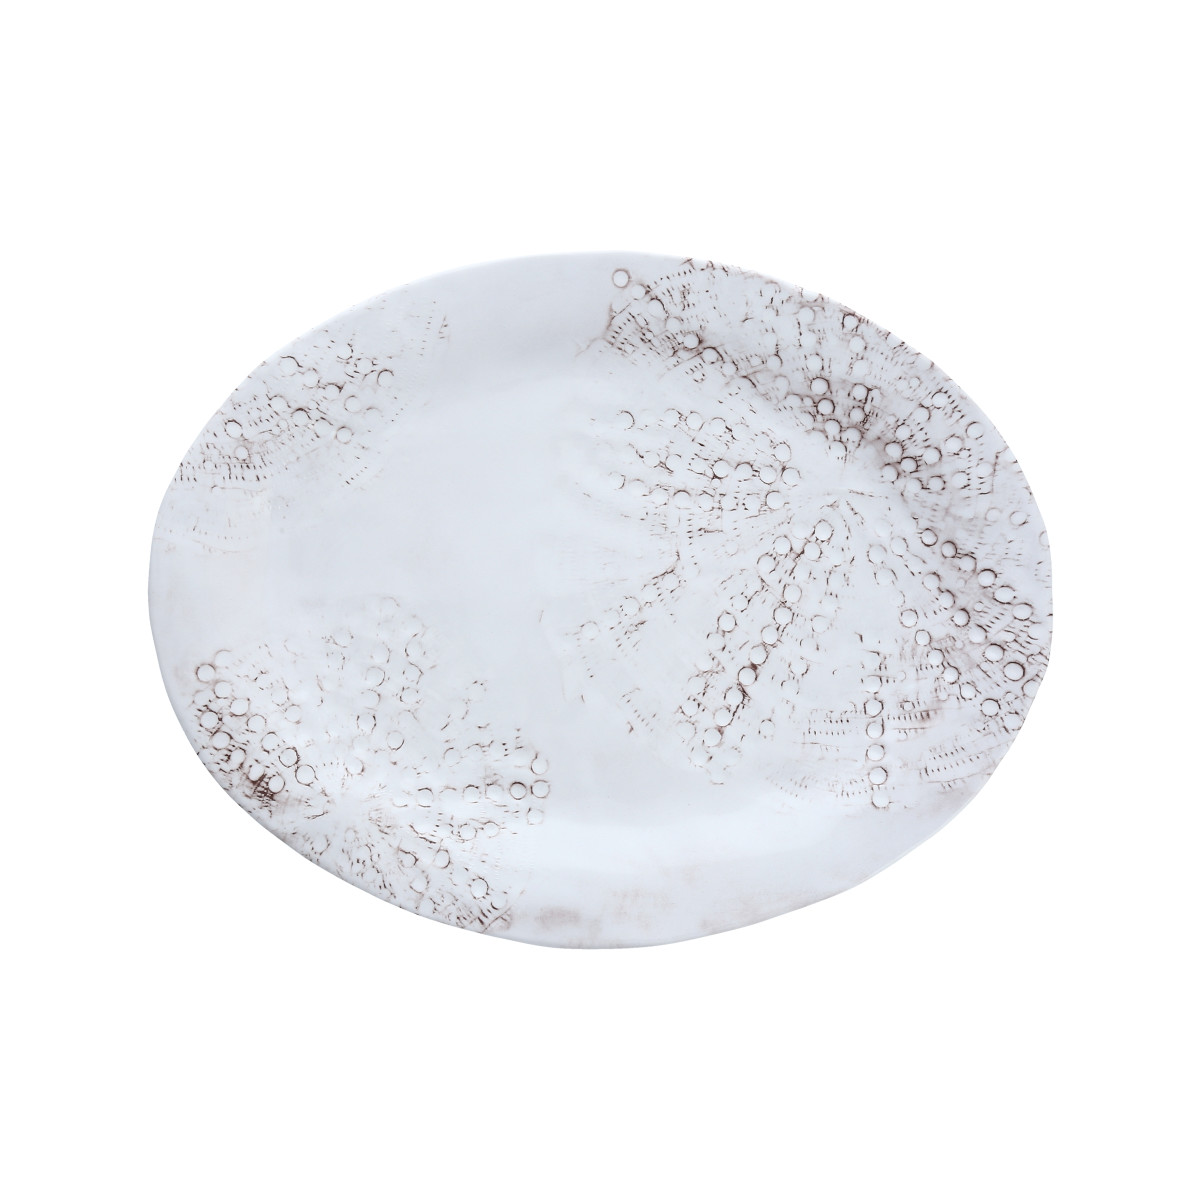 Sanibel White Oval Platter 15x12"